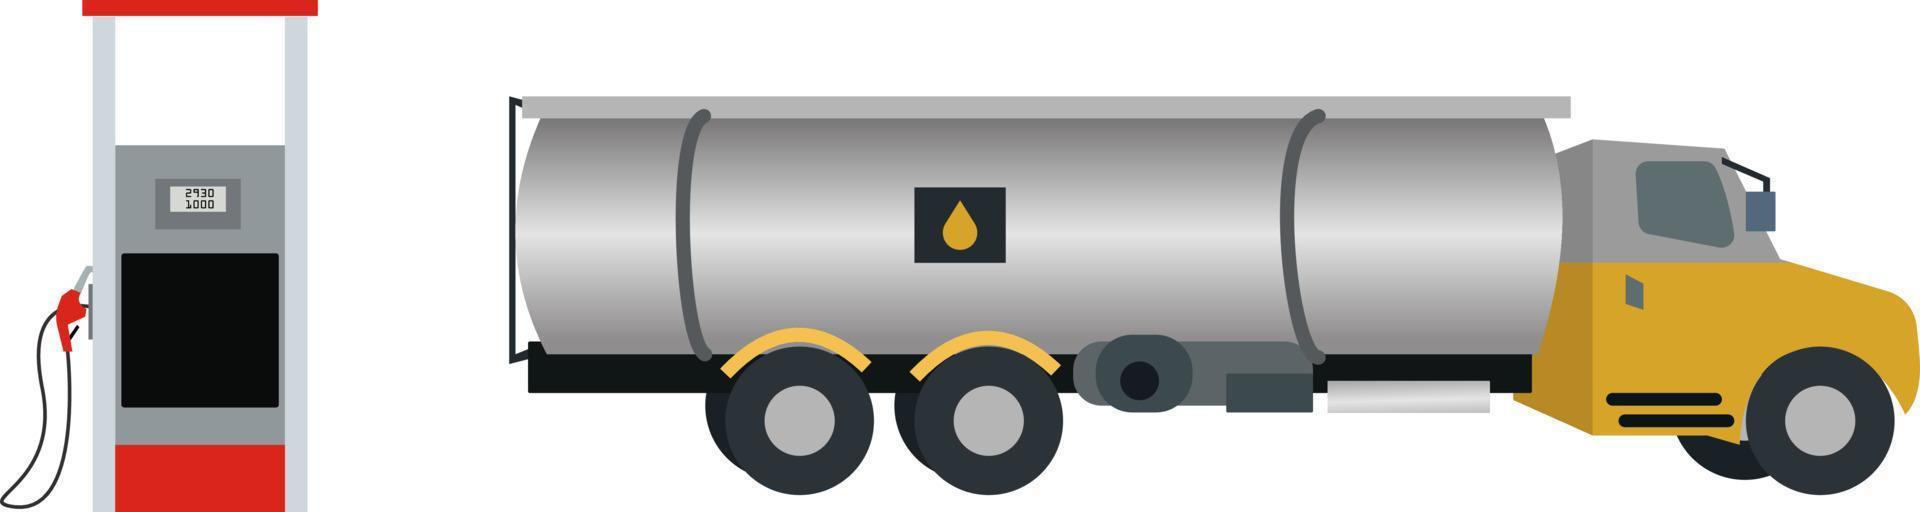 tankfartyg gas lastbil leverera bränsle på service station, bränsle tankfartyg lastbil förare få bensin för hans enorm fordon på små gas station vektor